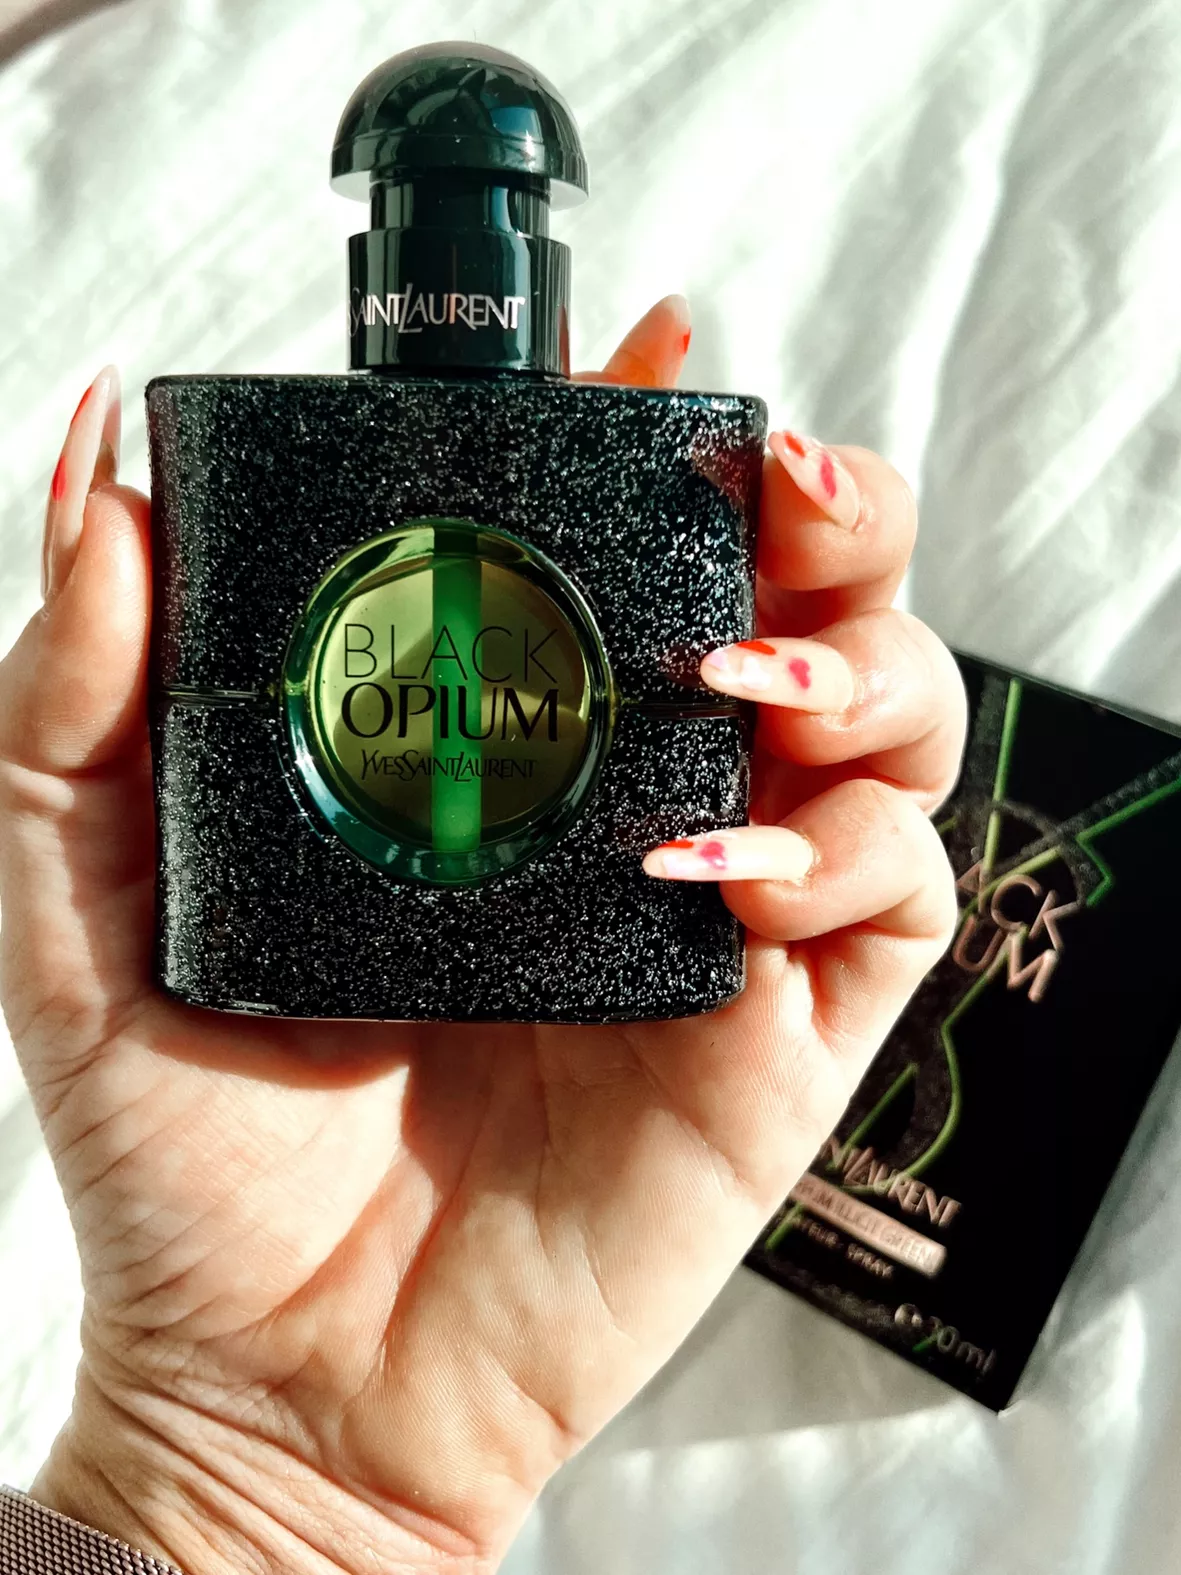 Black Opium Eau de Parfum Illicit … curated on LTK